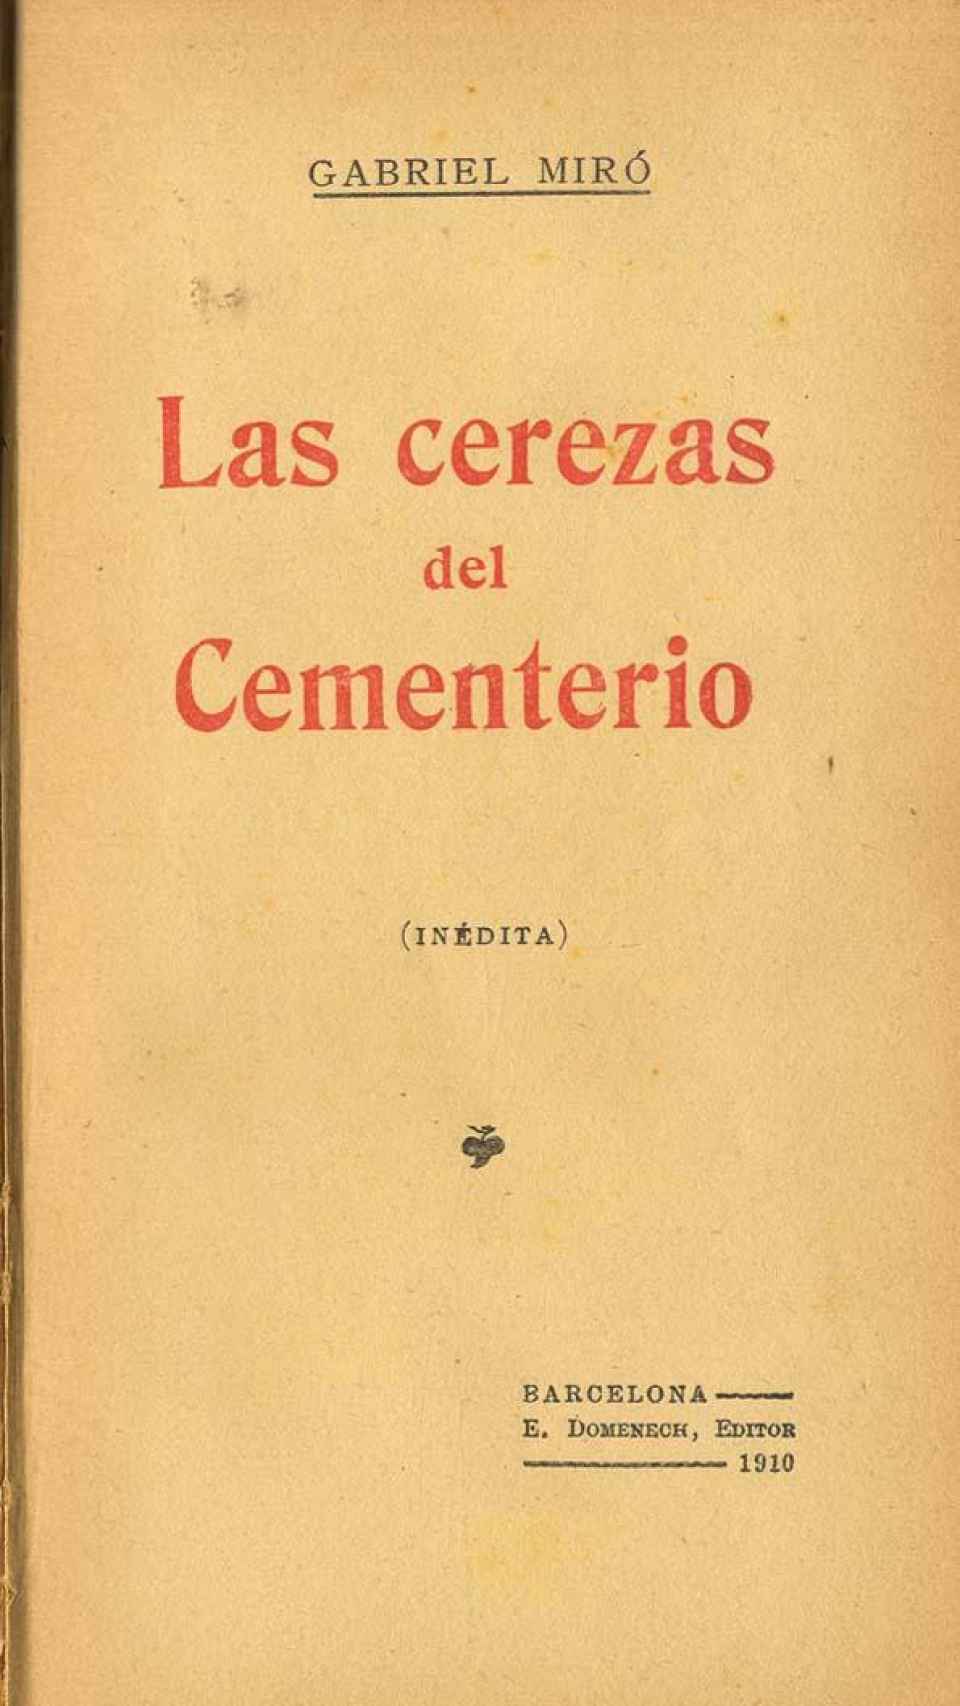 Edición de 'Las cerezas del cementerio' (1910)